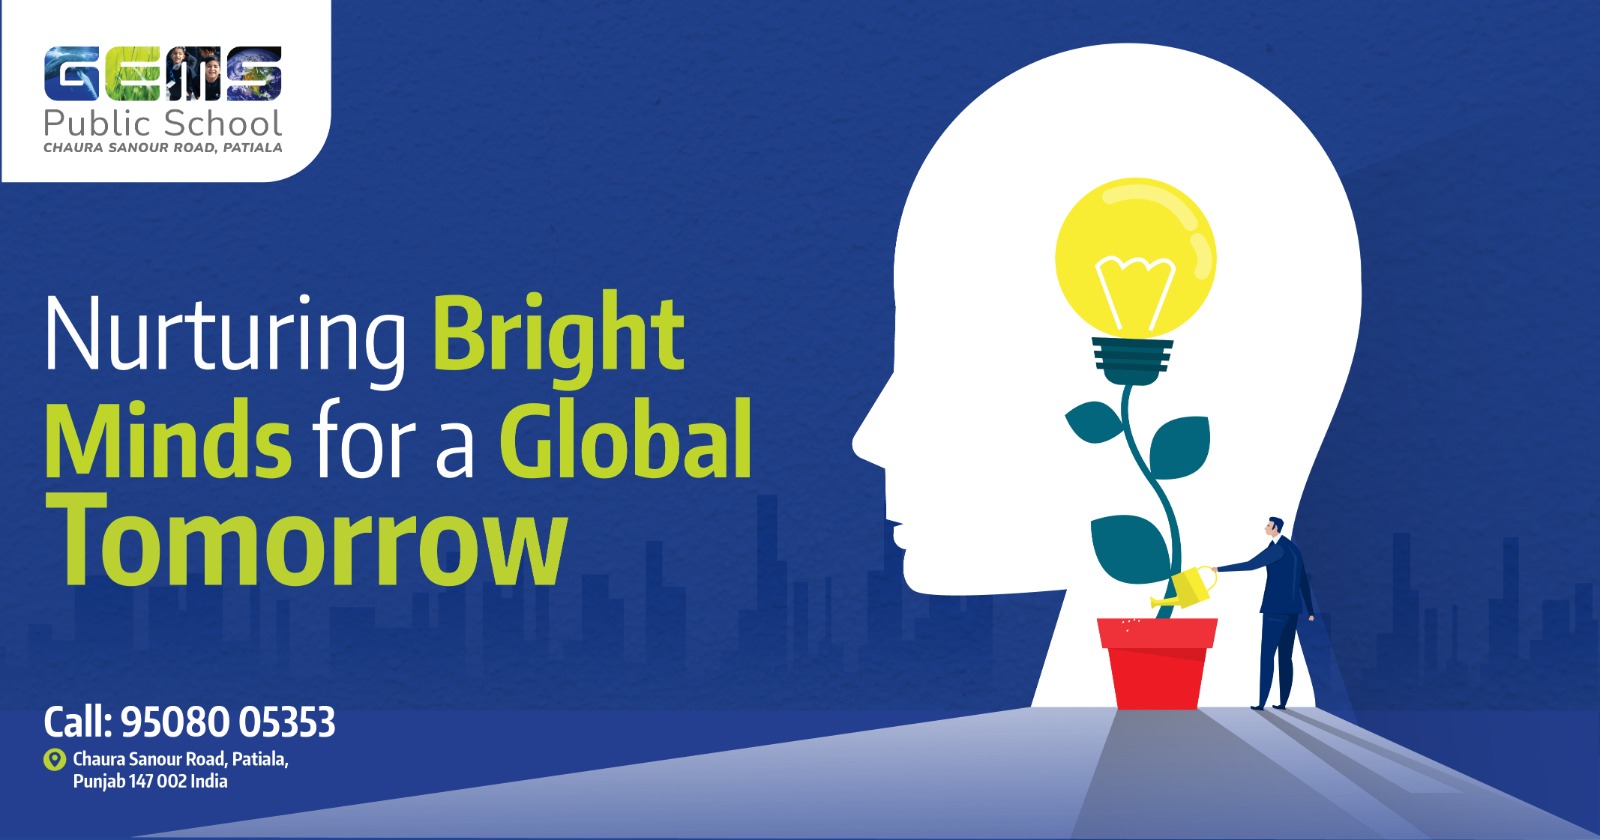 GEMS Public School: Nurturing Bright Minds for a Global Tomorrow